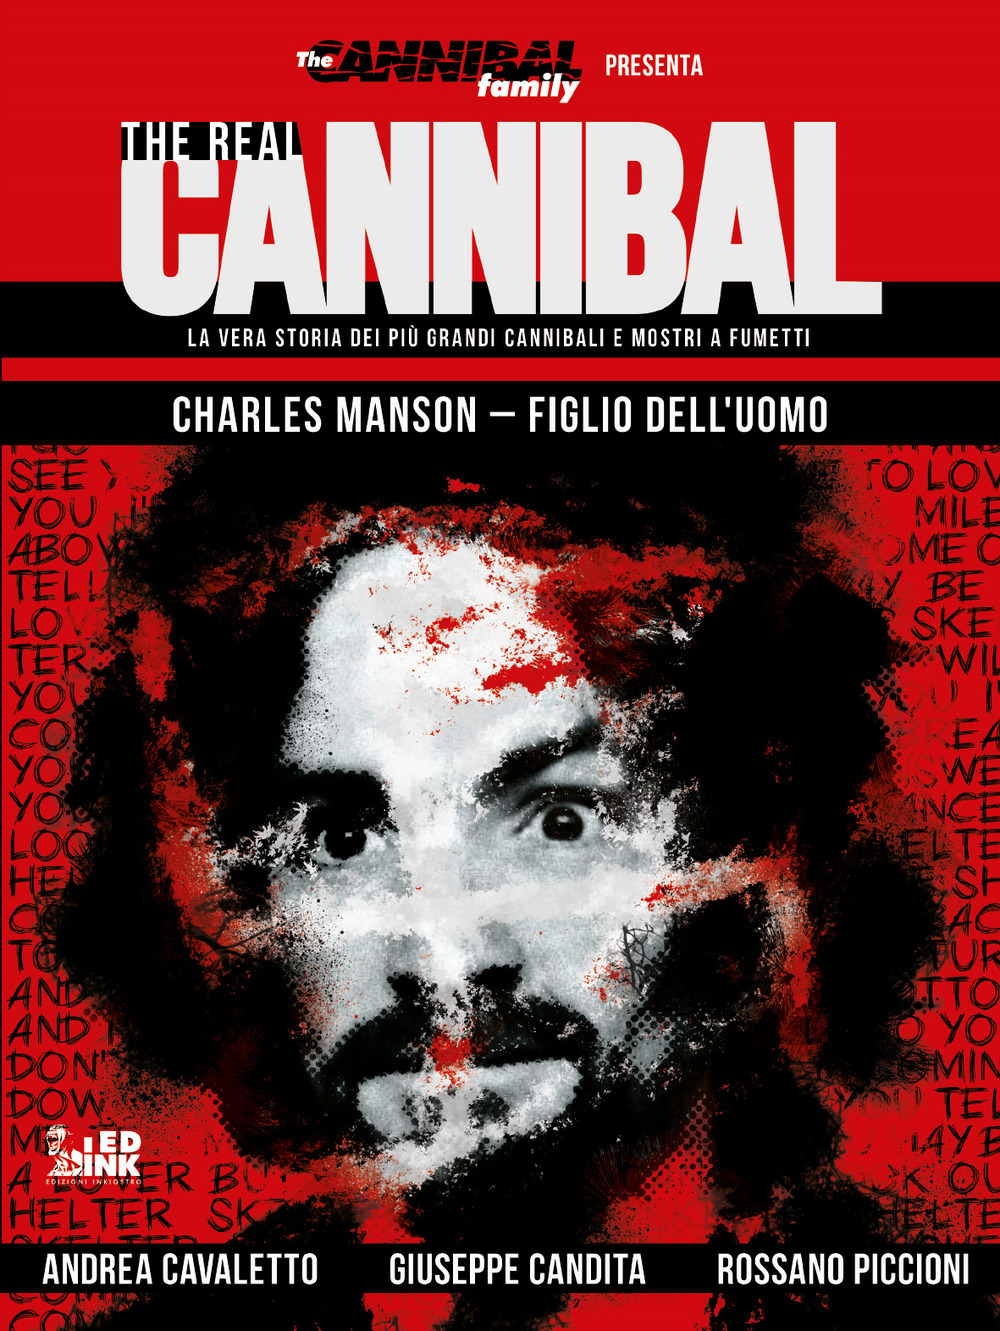 The real cannibal. La vera storia dei più grandi cannibali e mostri a fumetti. Vol. 2: Charles Manson. Figlio dell'uomo